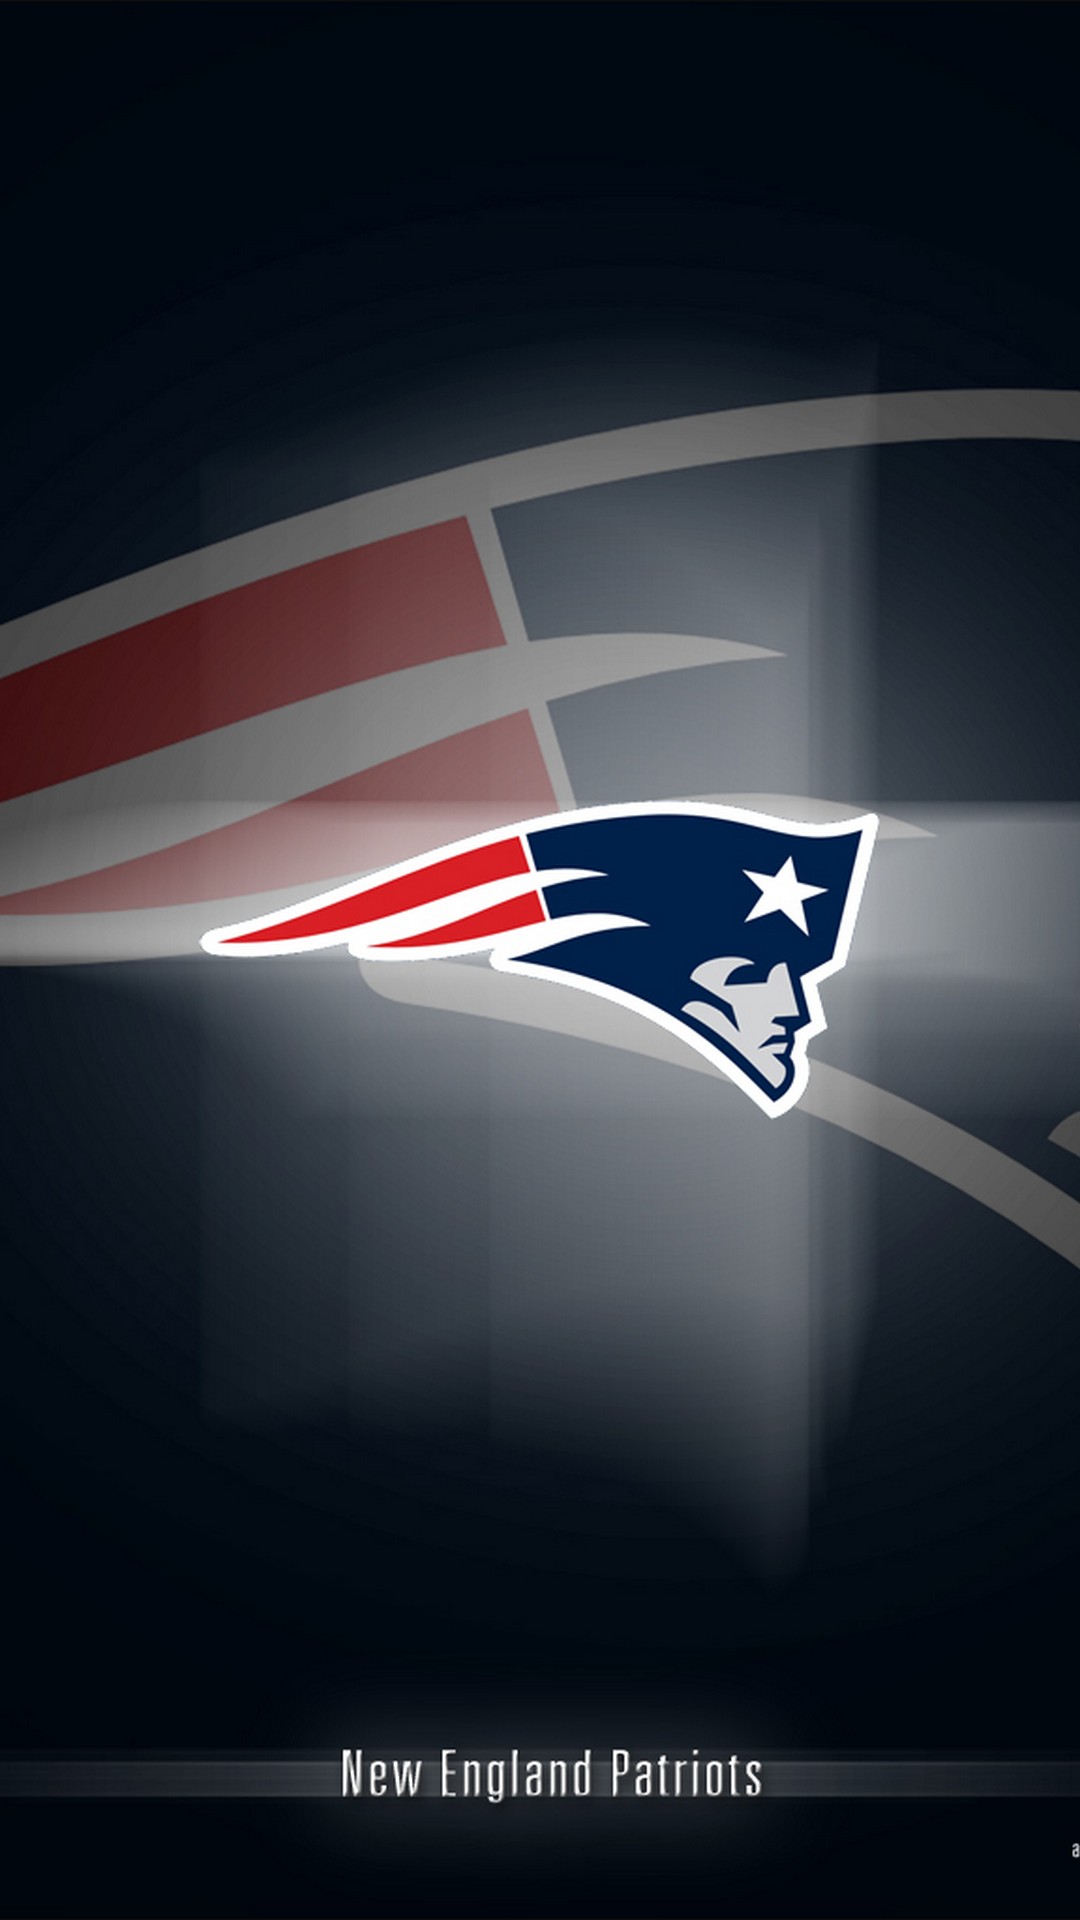 New England Patriots Iphone 8 Plus Wallpaper With High-resolution - New England Patriots Wallpaper 2019 - HD Wallpaper 